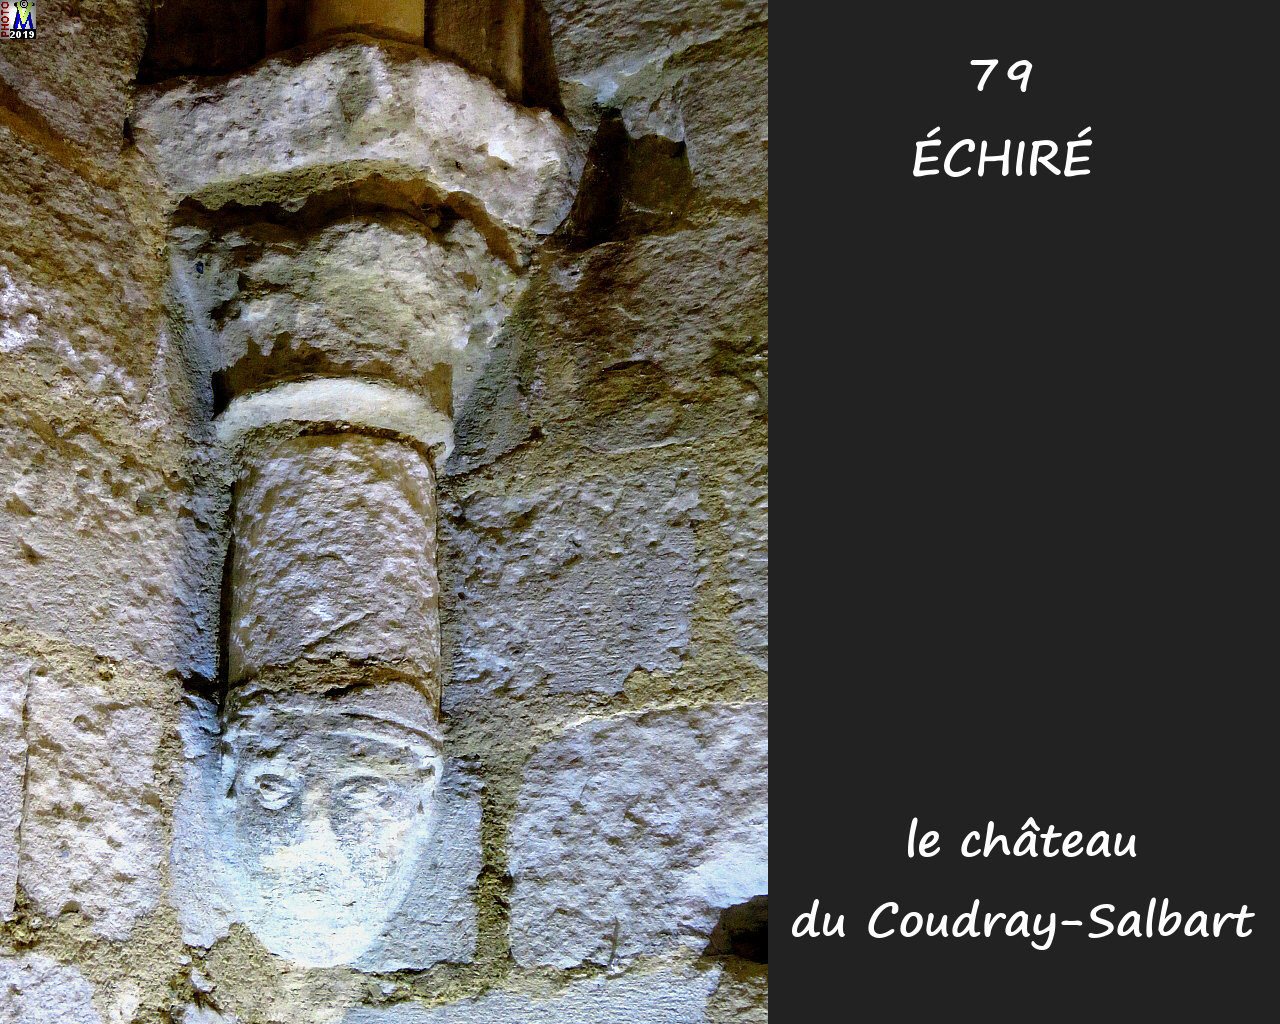 79ECHIRE_chateau_1116.jpg